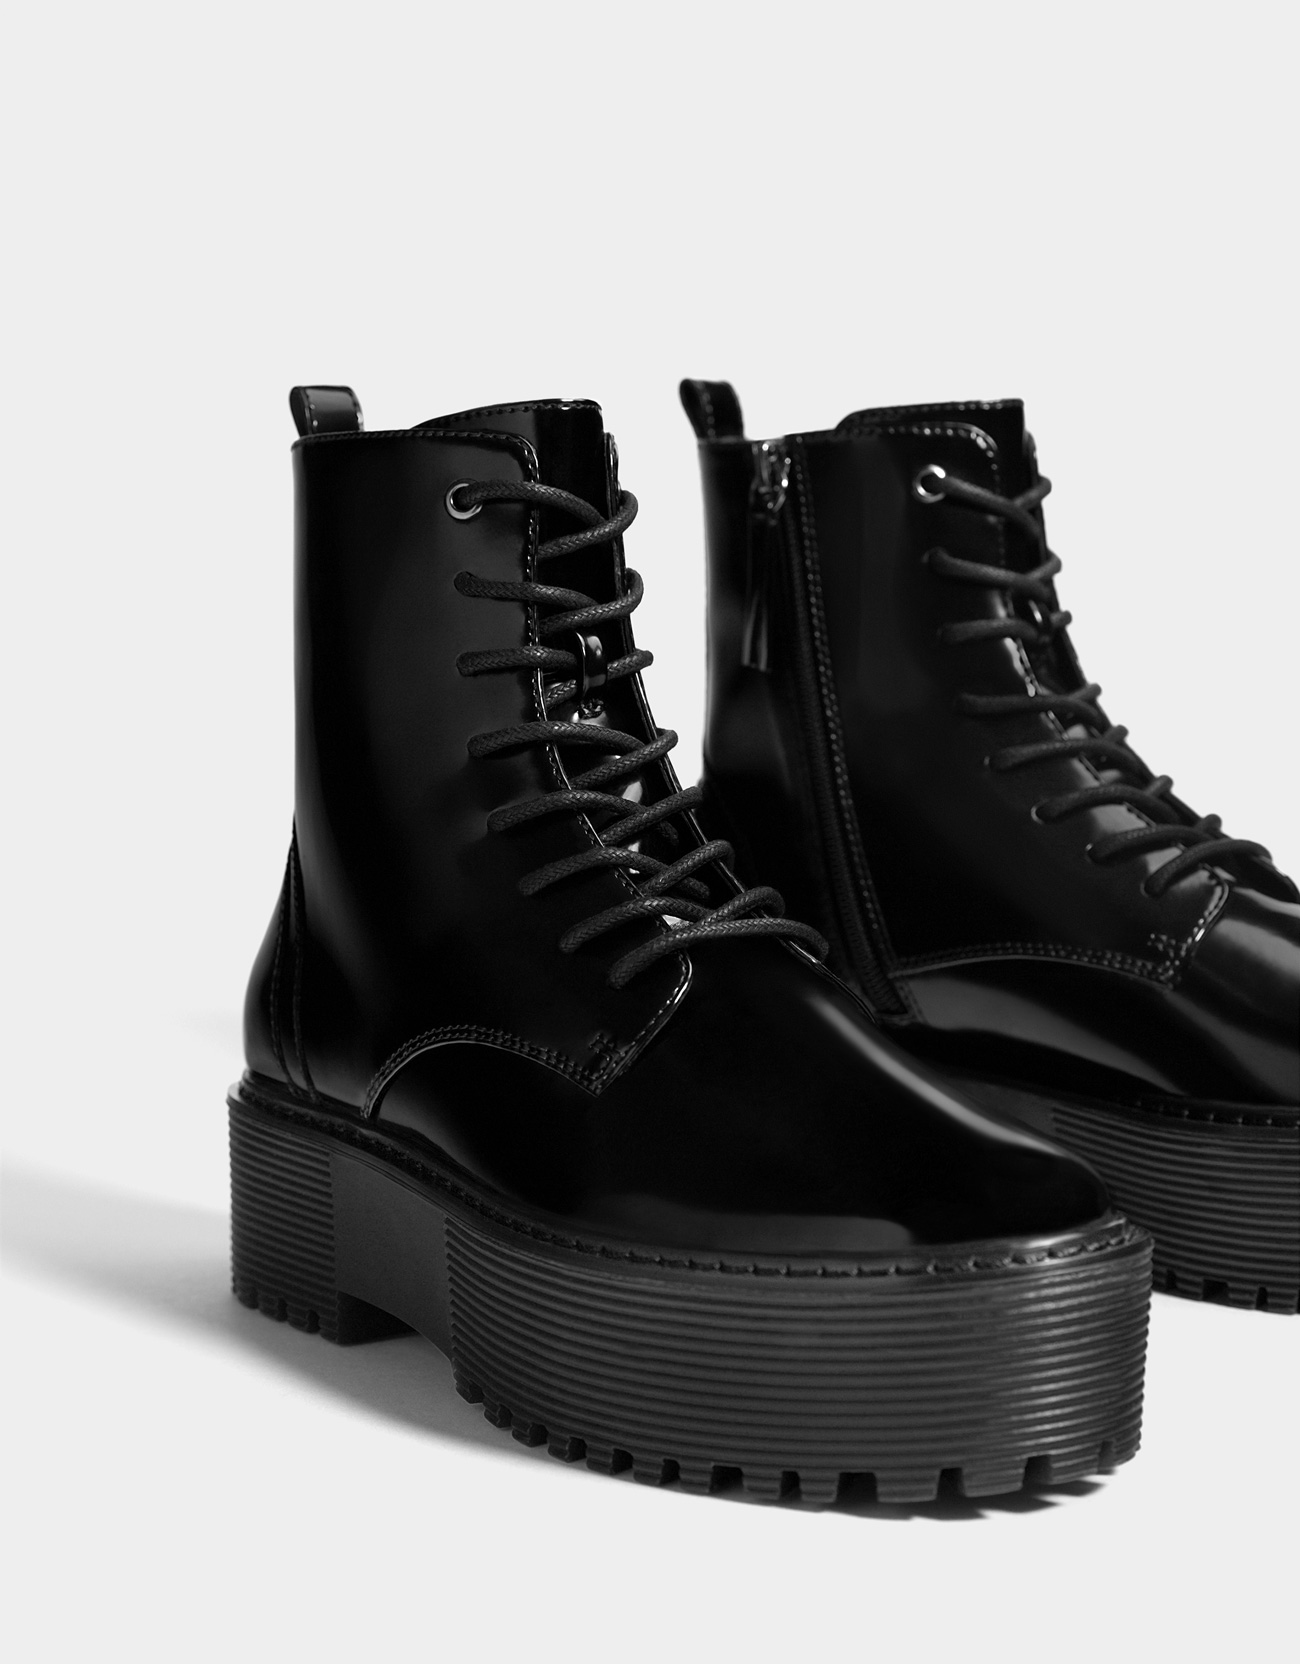 Мужская обувь на платформе. Берцы Bershka. Черные ботинки бершка. Черные ботинки бершка мужские. Бершка ботинки на платформе Ankle Boots.